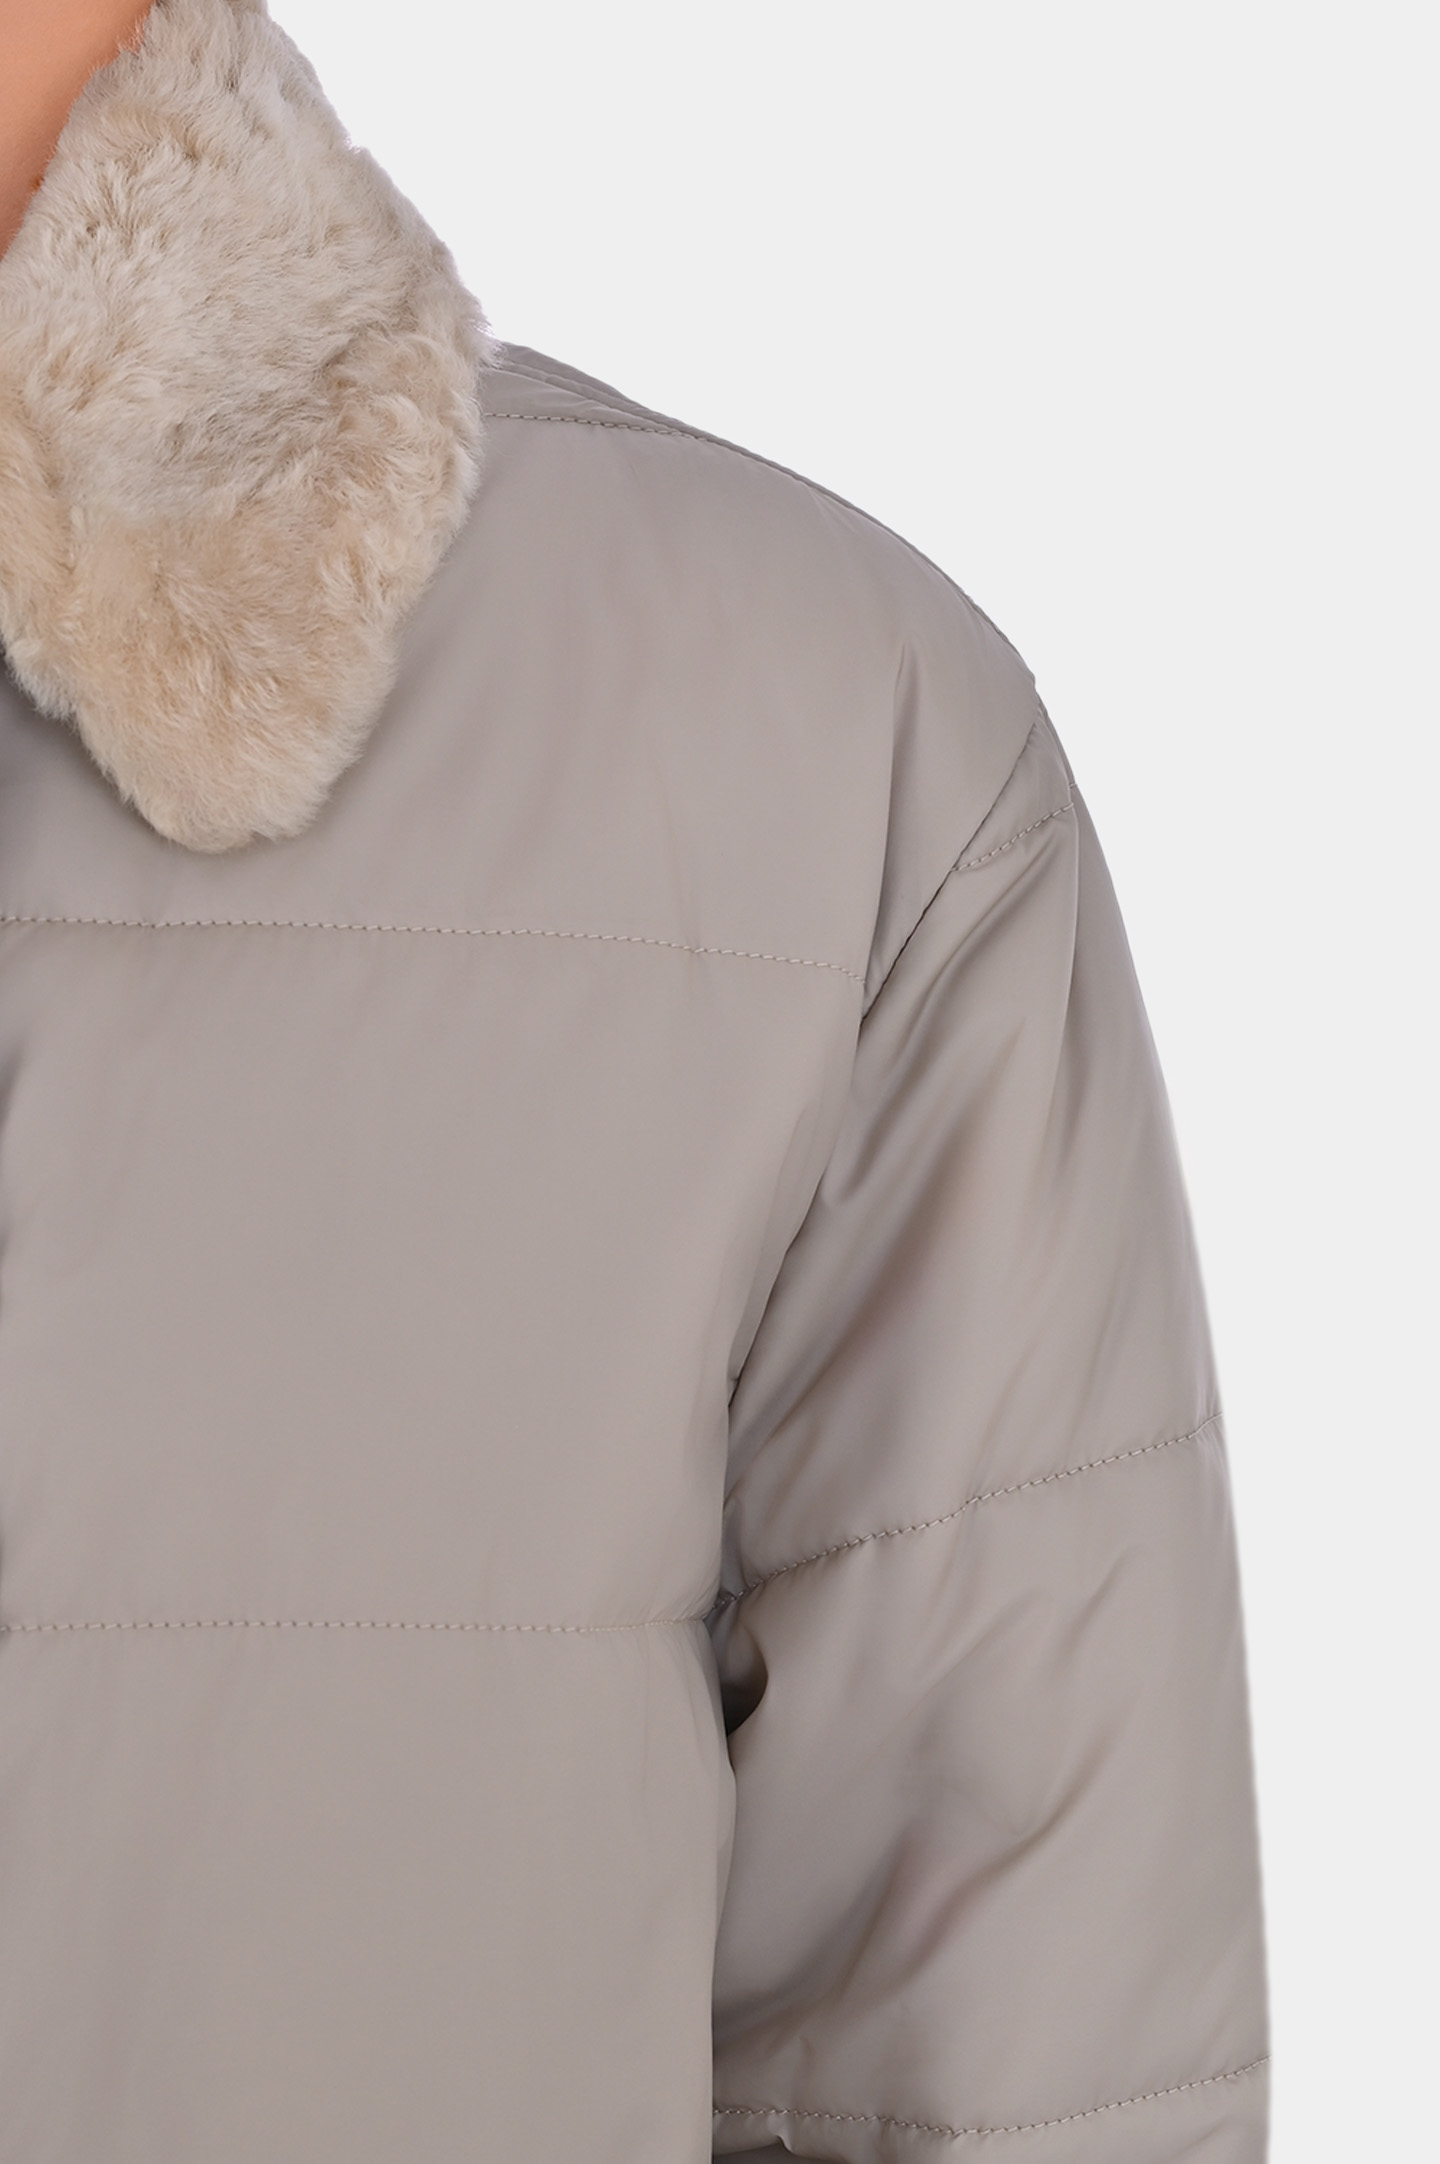 Куртка BRUNELLO  CUCINELLI MH5049789P, цвет: Светло-бежевый, Женский